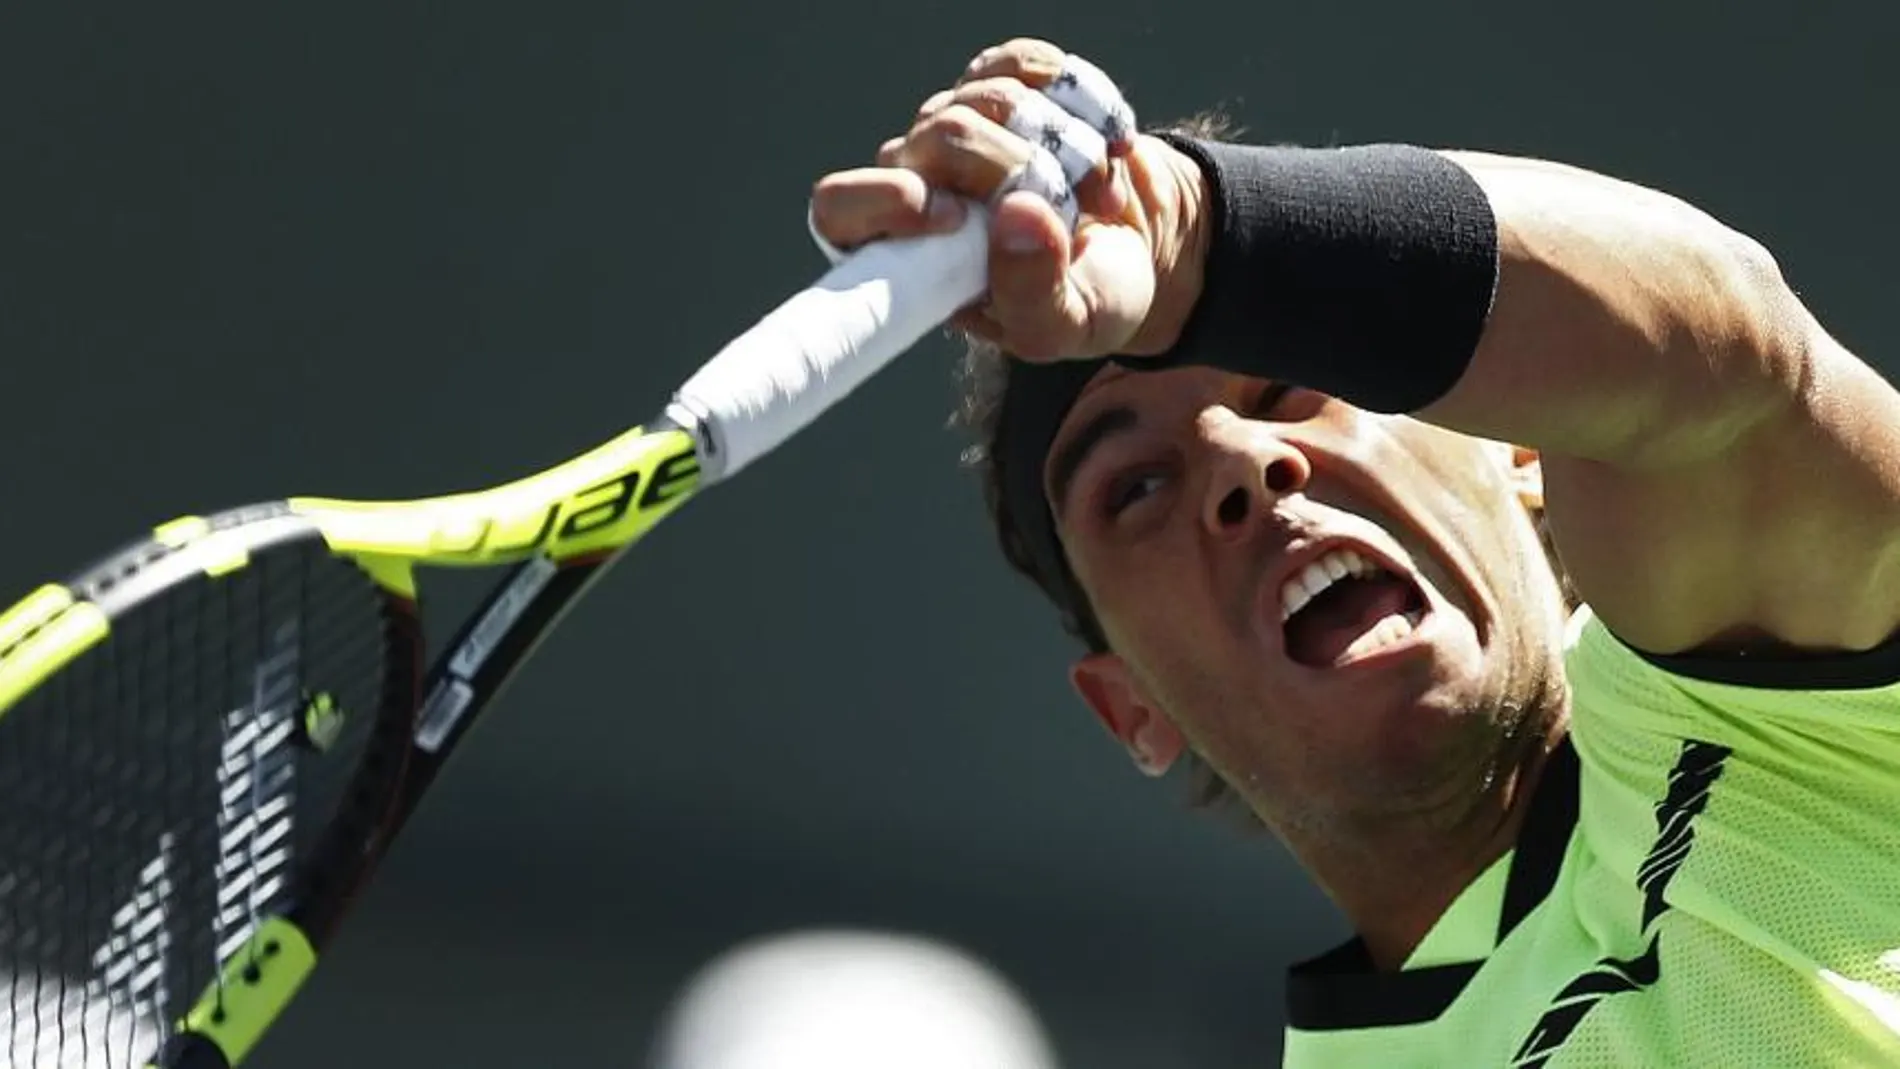 Federer y Nadal se enfrentan en octavos de Indian Wells